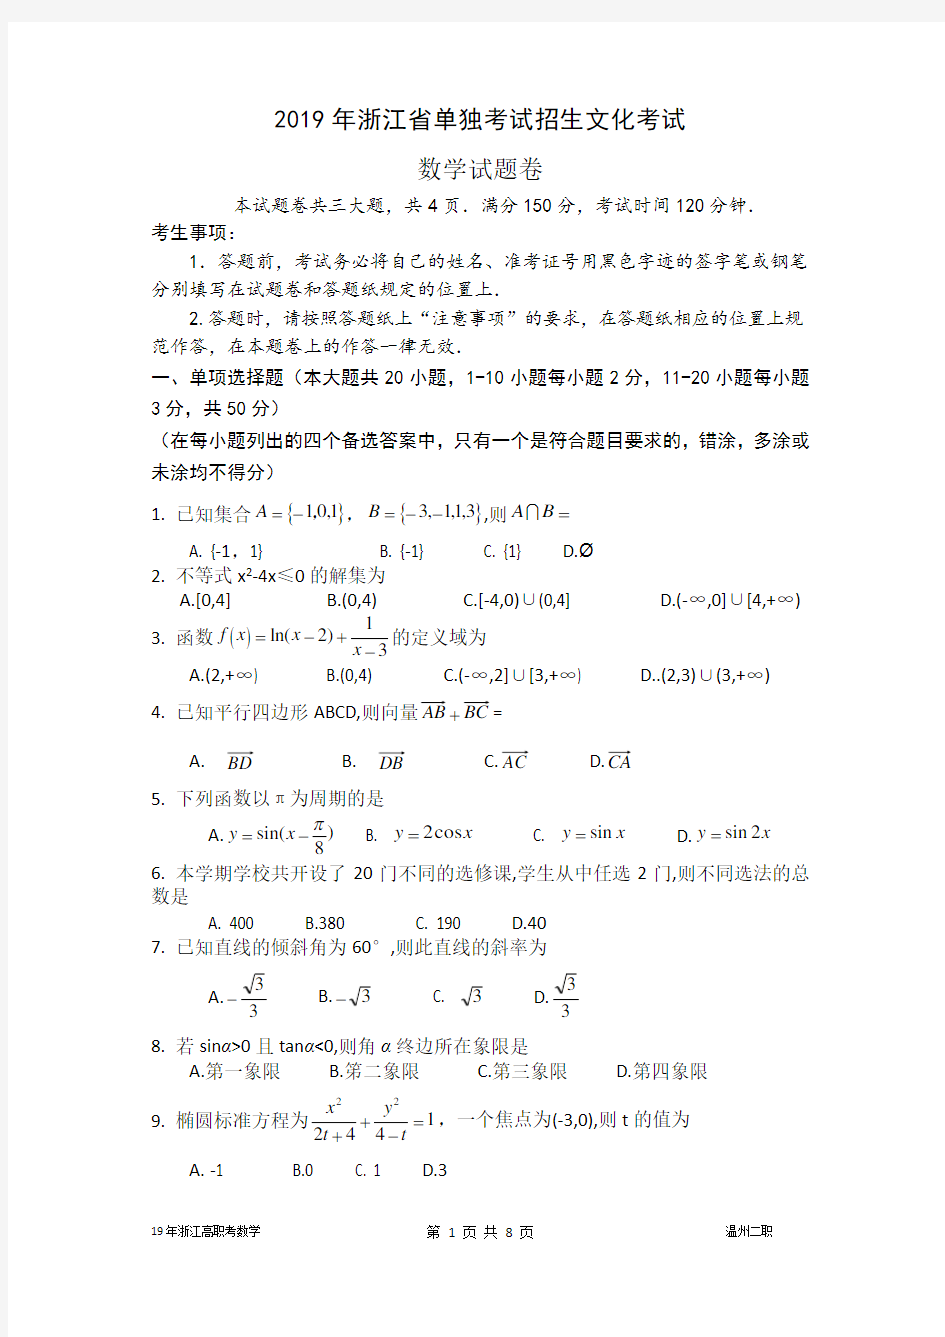 (完整)2019年浙江高职考数学试卷